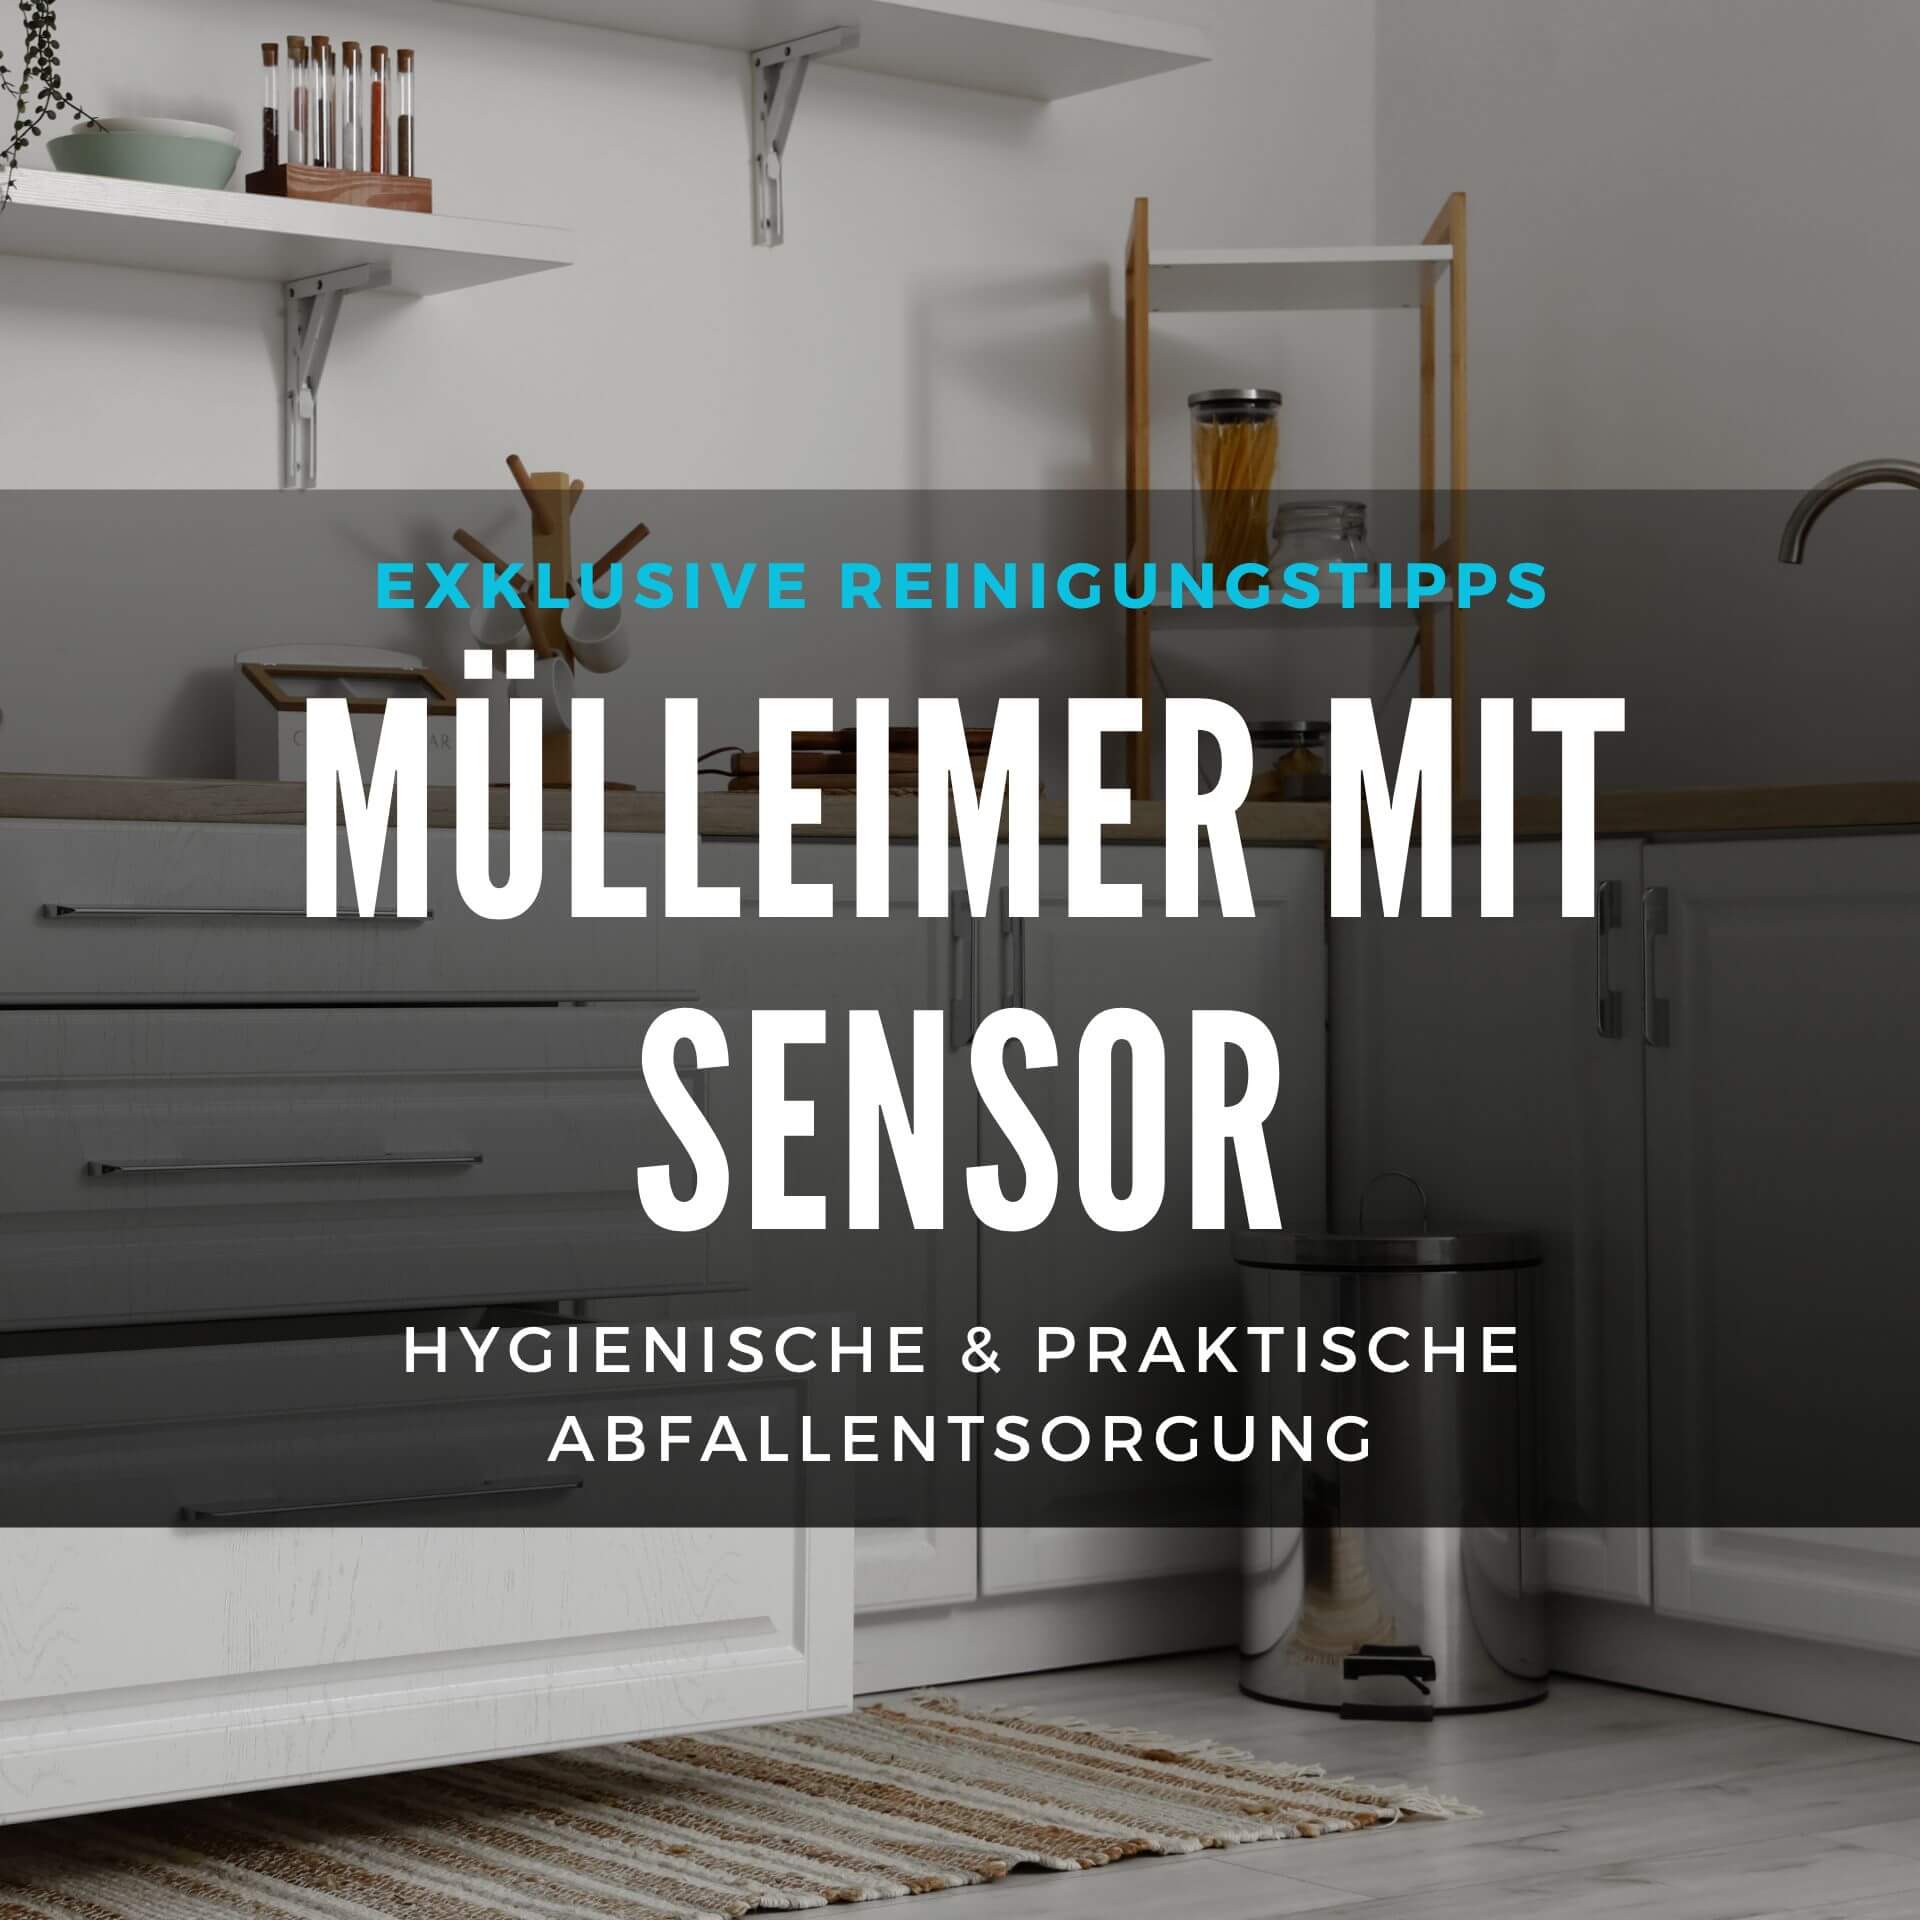 muelleimer-mit-sensor